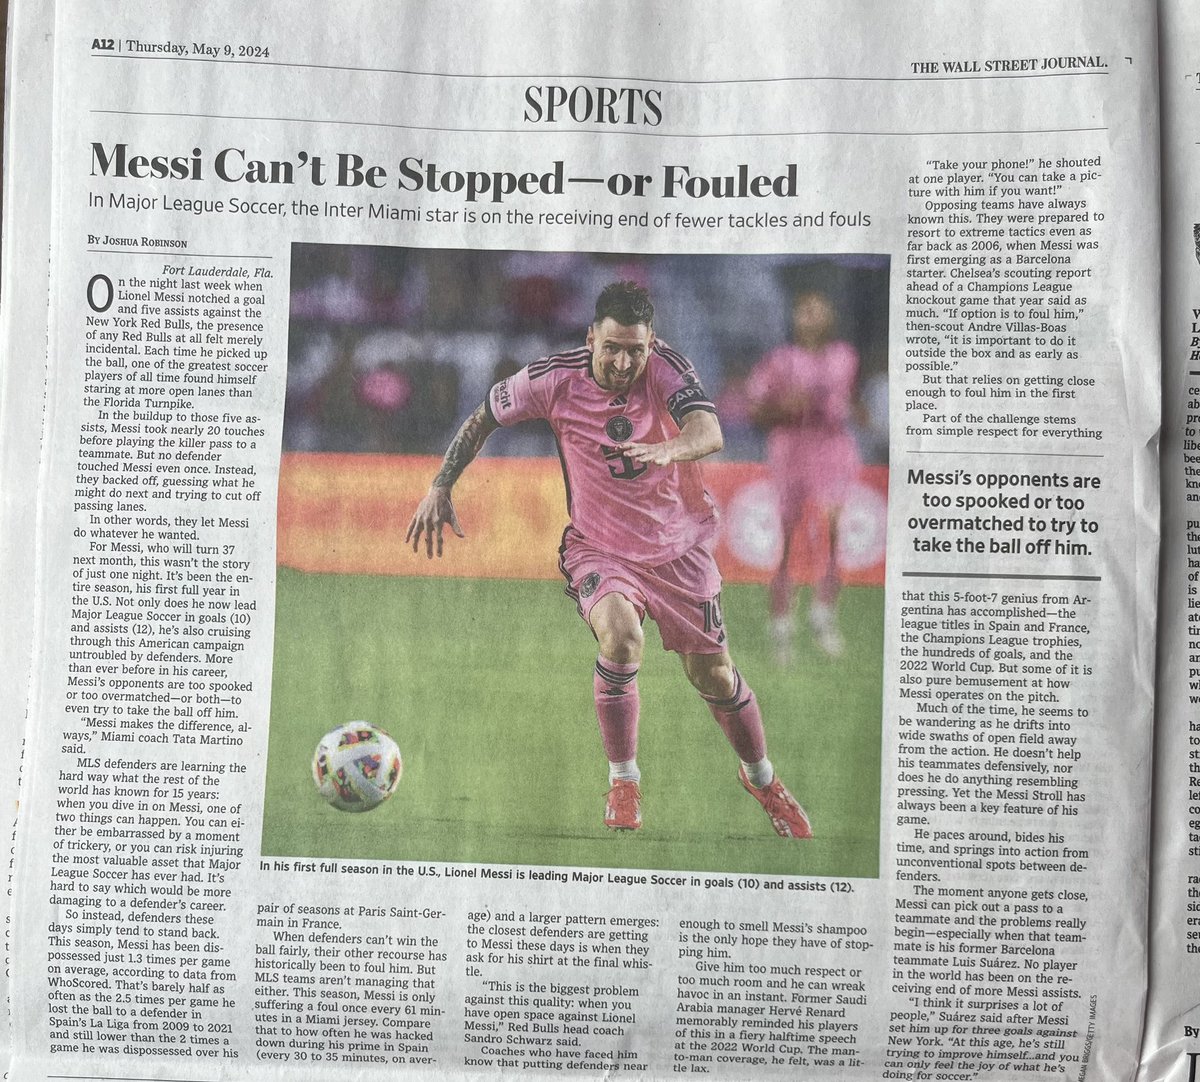 The Wall Street Journal, periódico New York🇺🇸, le dedico hoy unas columnas a Leo: - Messi no puede ser parado o Fauleado - Es uno de los mejores de la Historia del futbol - Rivales asustados o muy superados pa quitarle la⚽️ - Se pasea, espera el momento oportuno y entra en acción